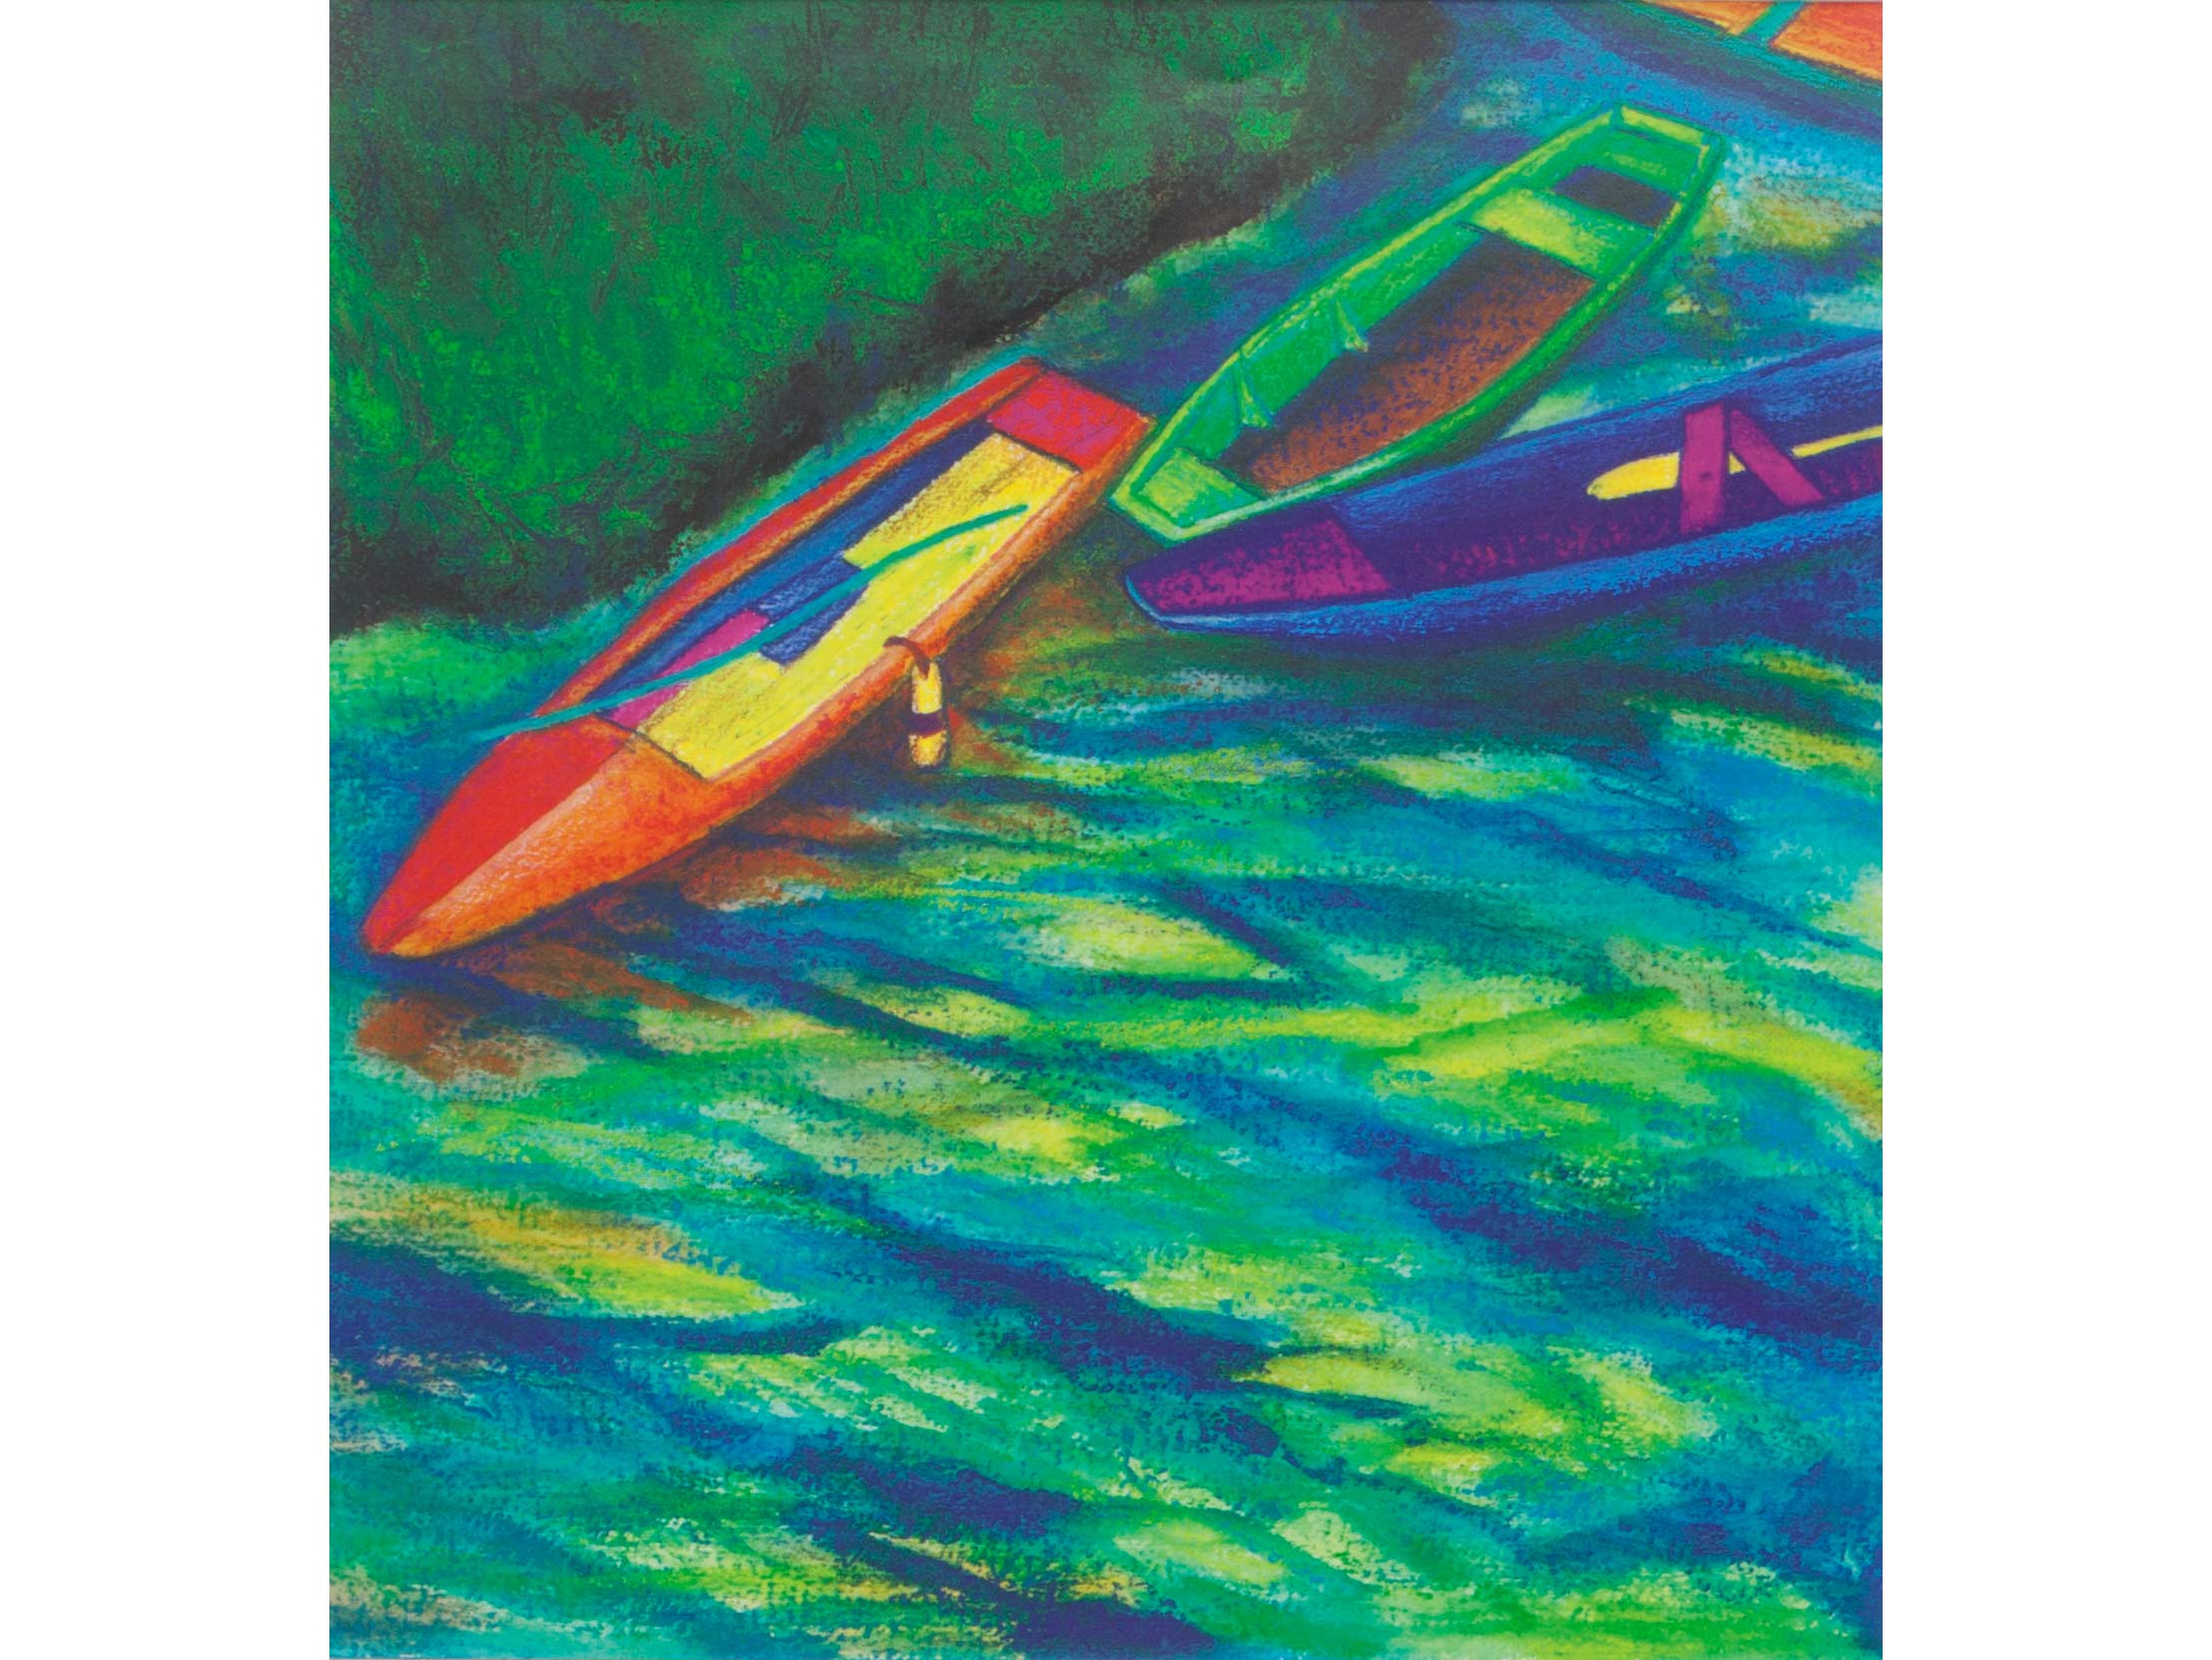 Lauren Avery Hutton | Boats on Loire 1, watercolor, 16x12, 2010